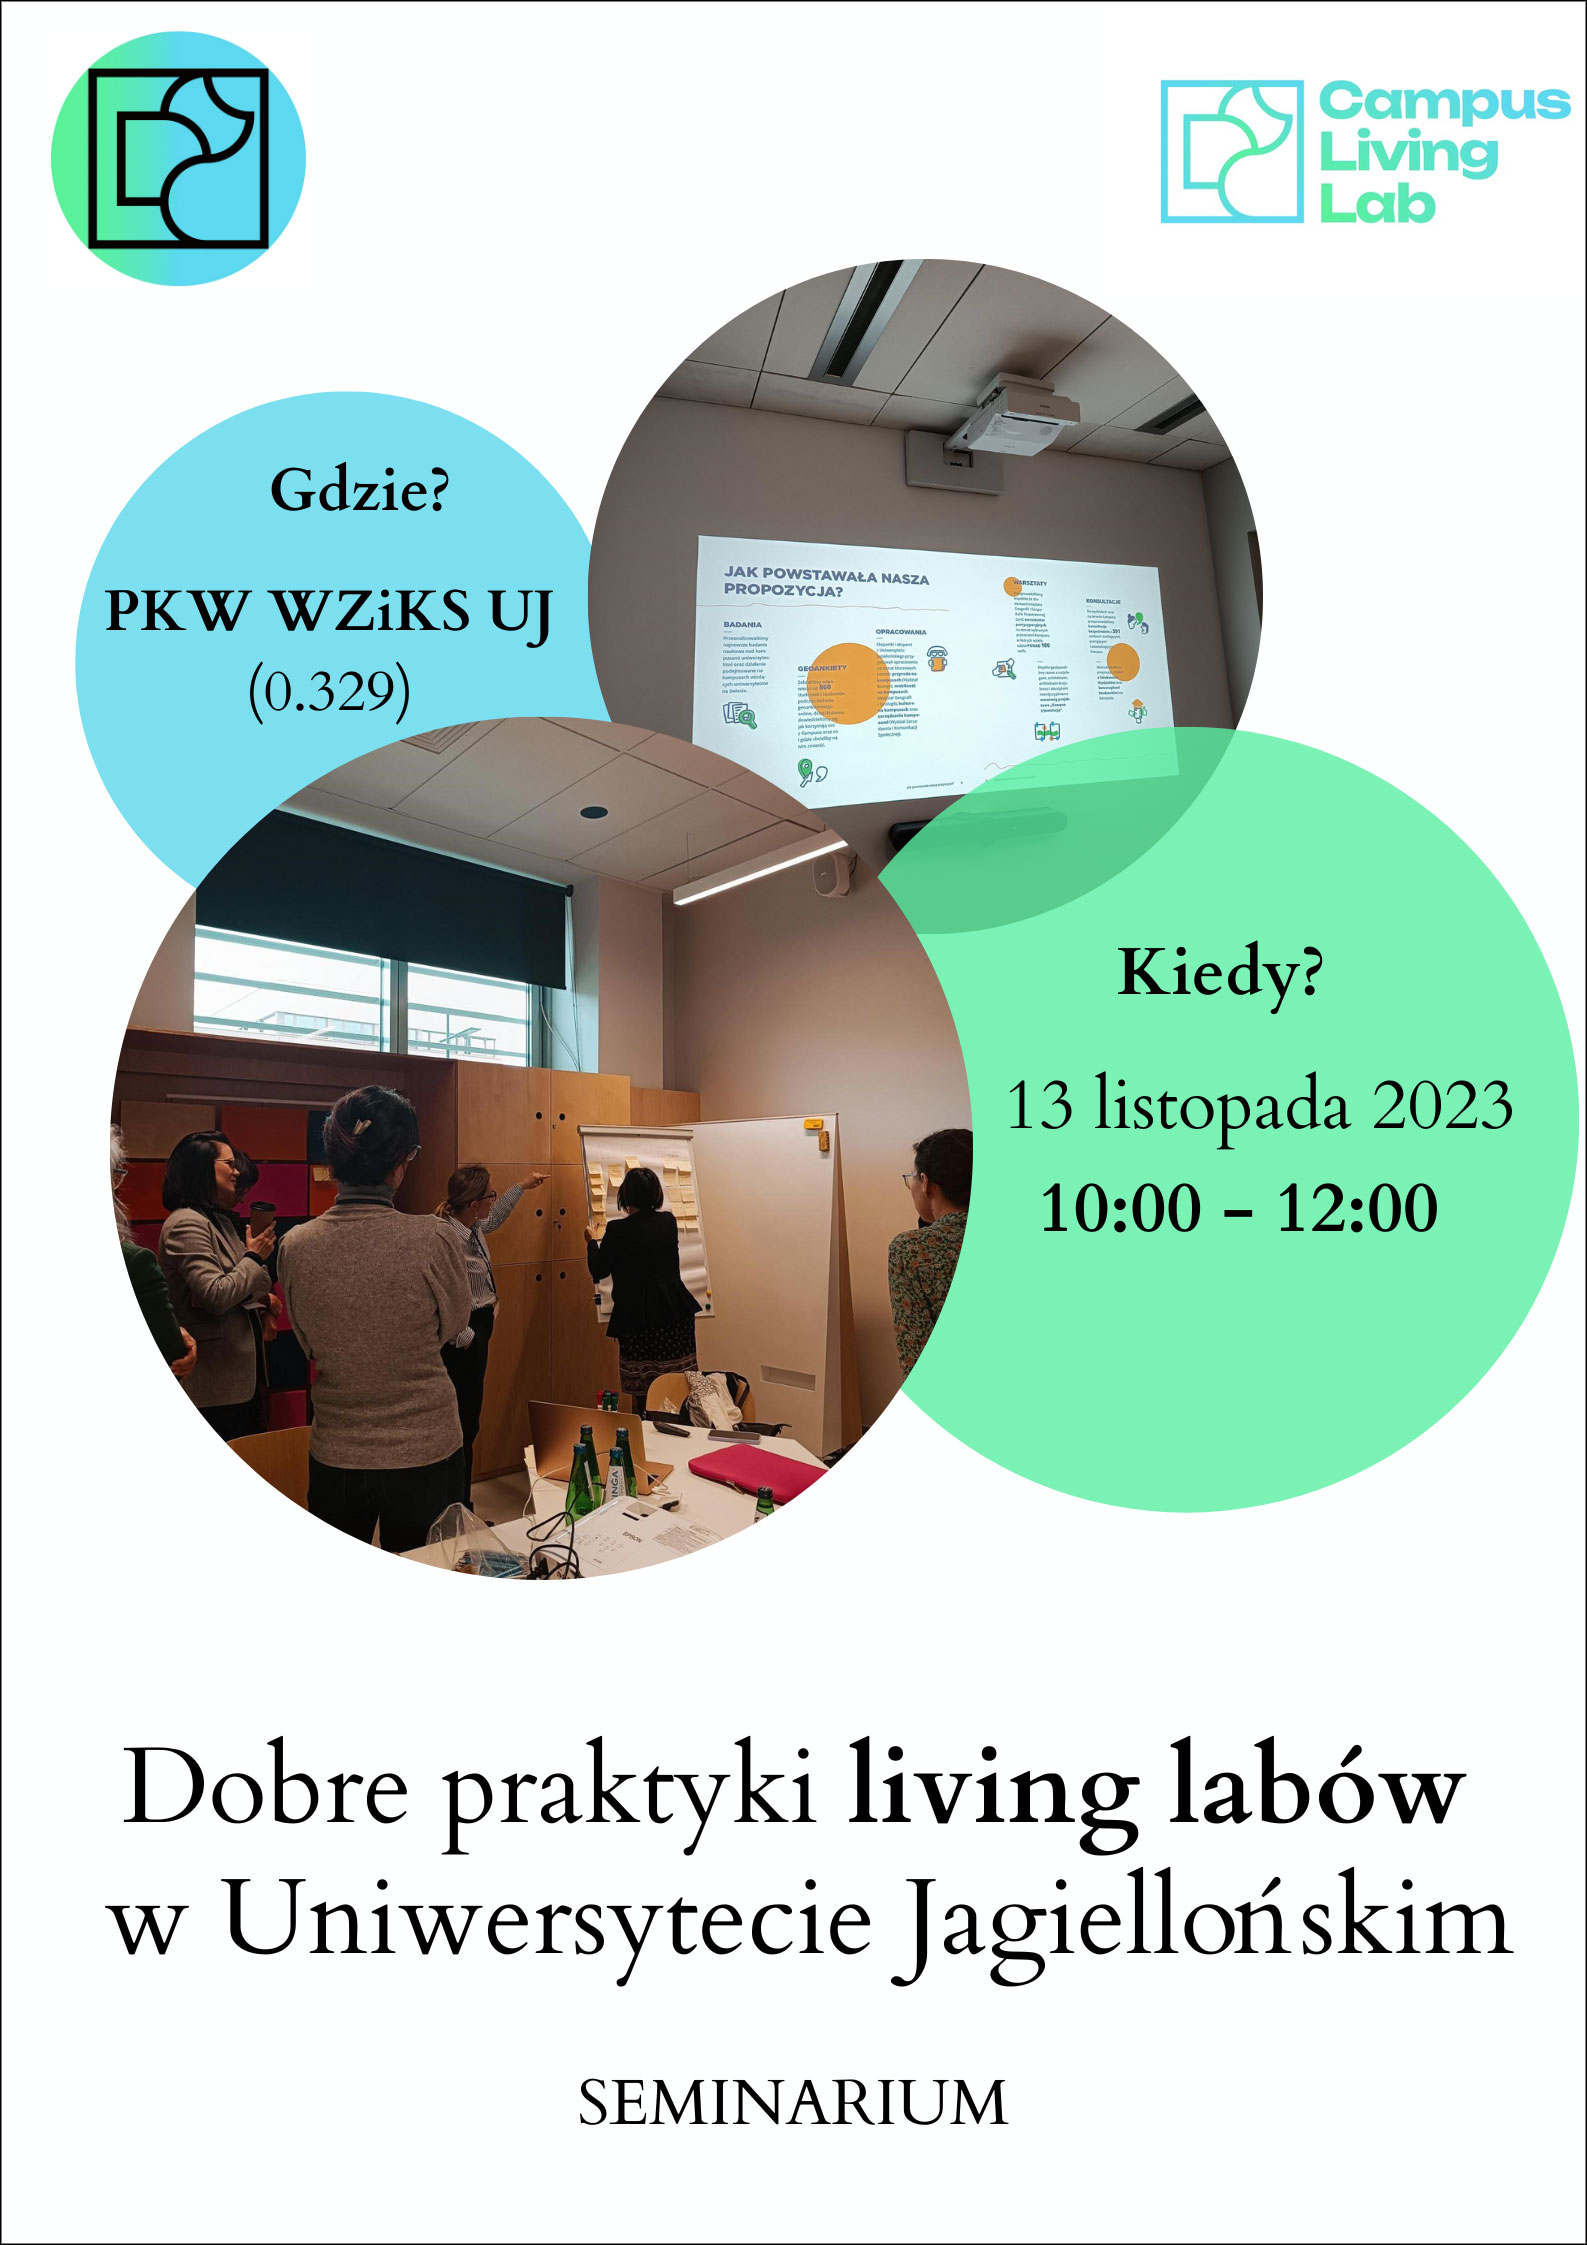 Dobre praktyki living labów w Uniwersytecie Jagiellońskim [seminarium]